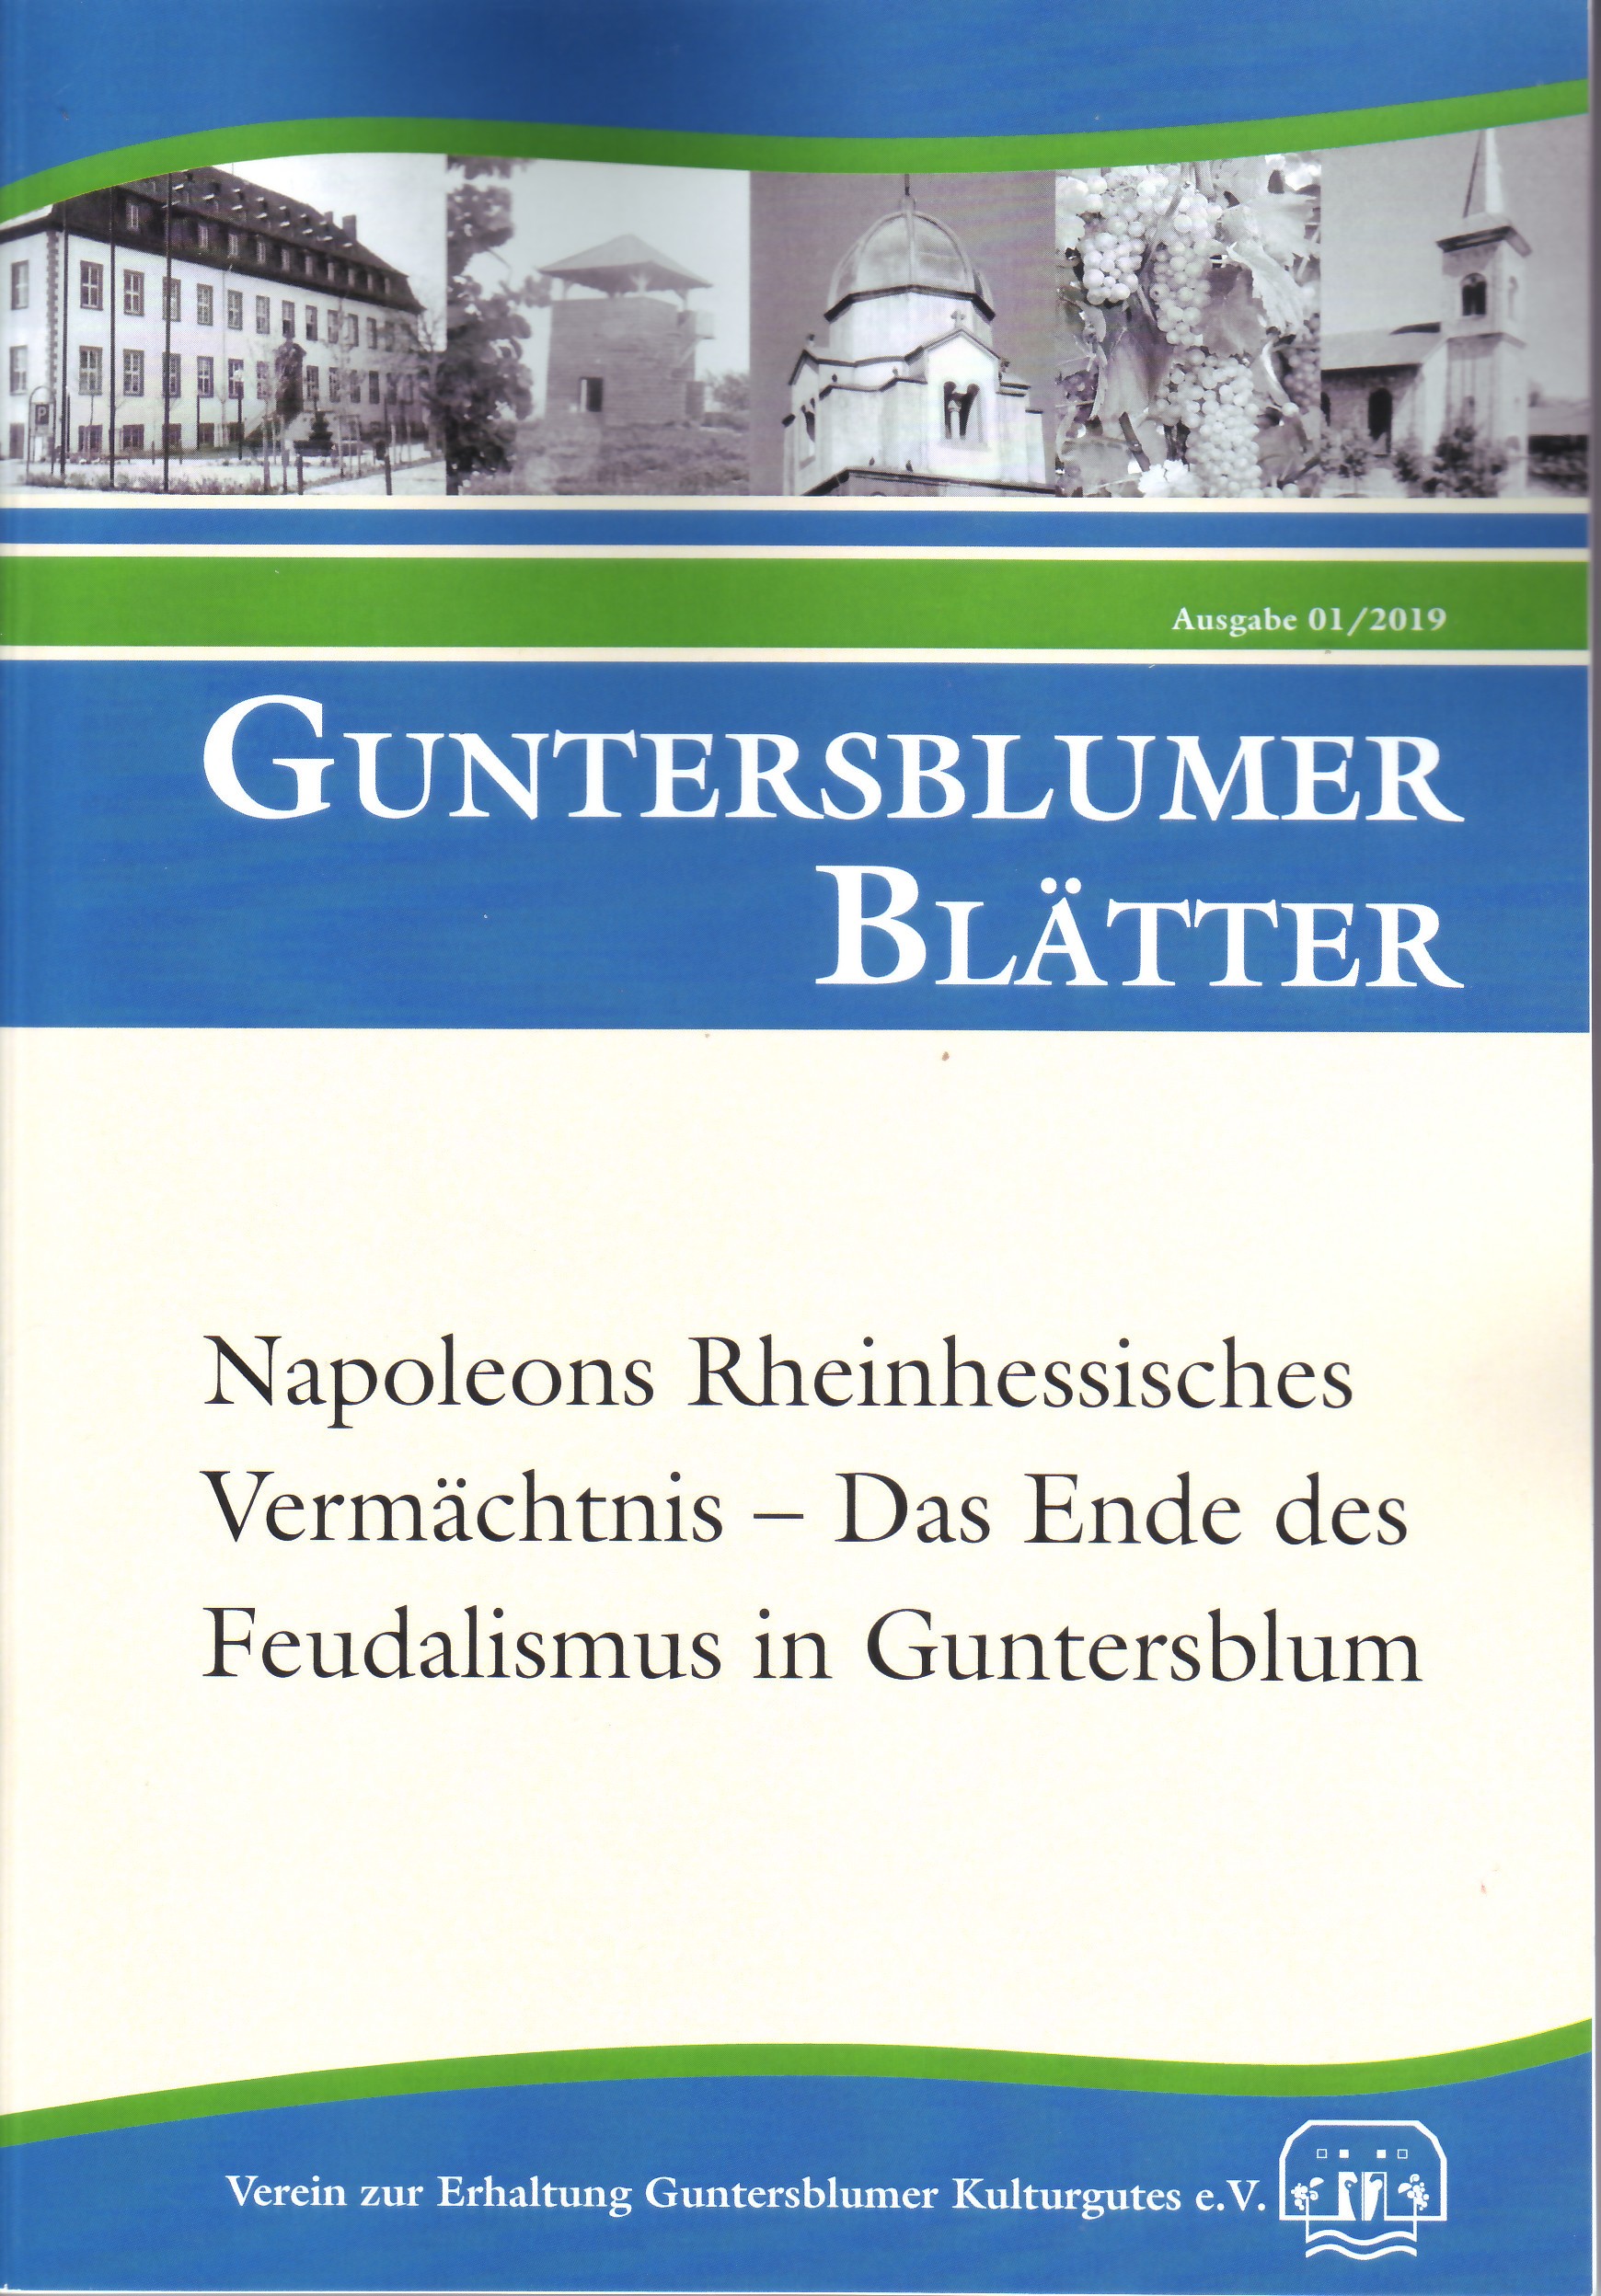 Napoleons Rheinhessisches Vermächtnis  (Museum Guntersblum CC BY-NC-SA)